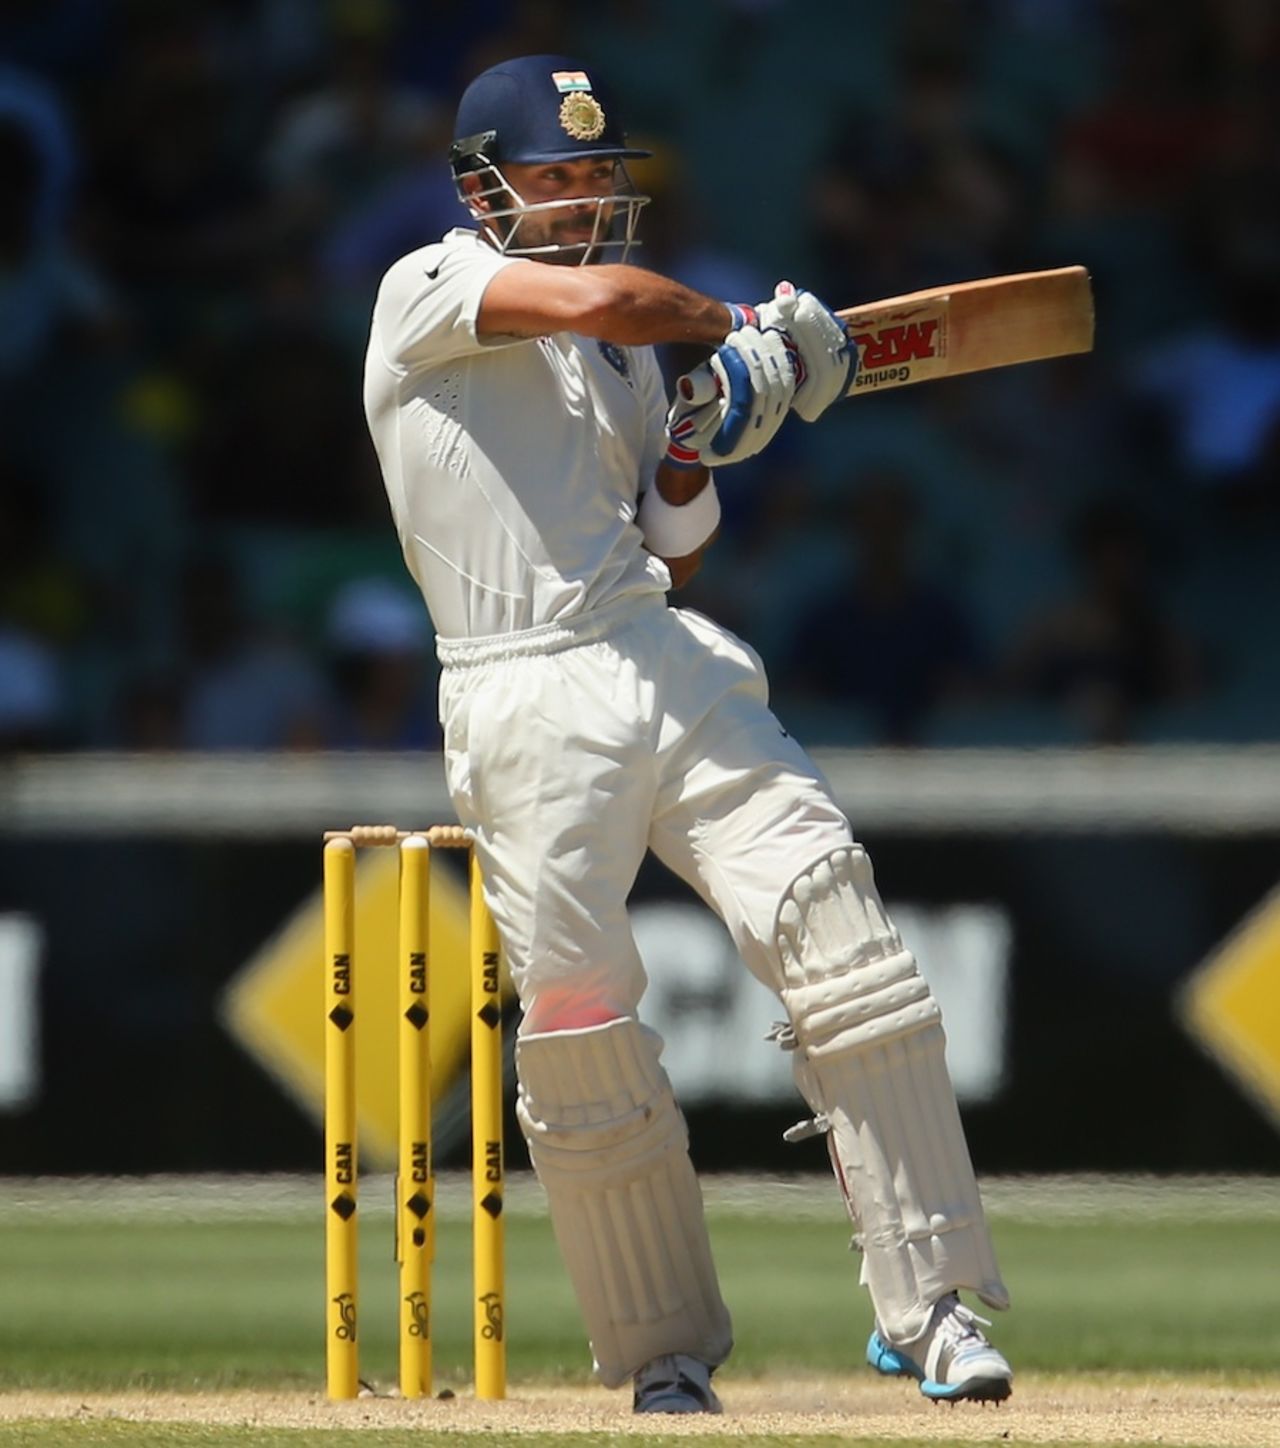 Virat Kohli pulls, Australia v India, 1st Test, Adelaide, 5th day, December 13, 2014